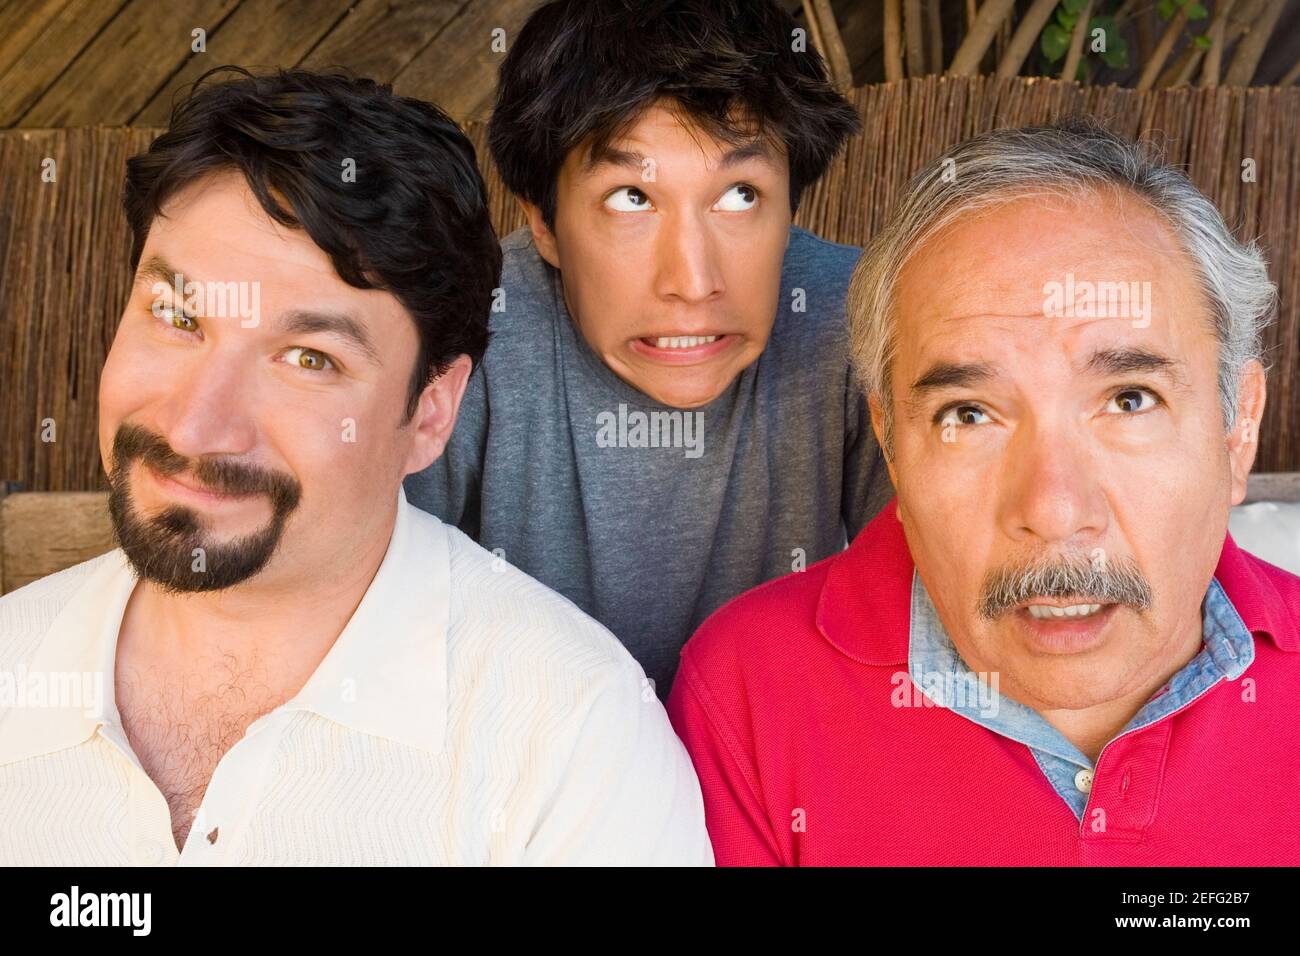 Porträt eines Mitte erwachsenen Mannes mit seinem Vater und Sohn machen ihre Gesichter Grinsen Stockfoto